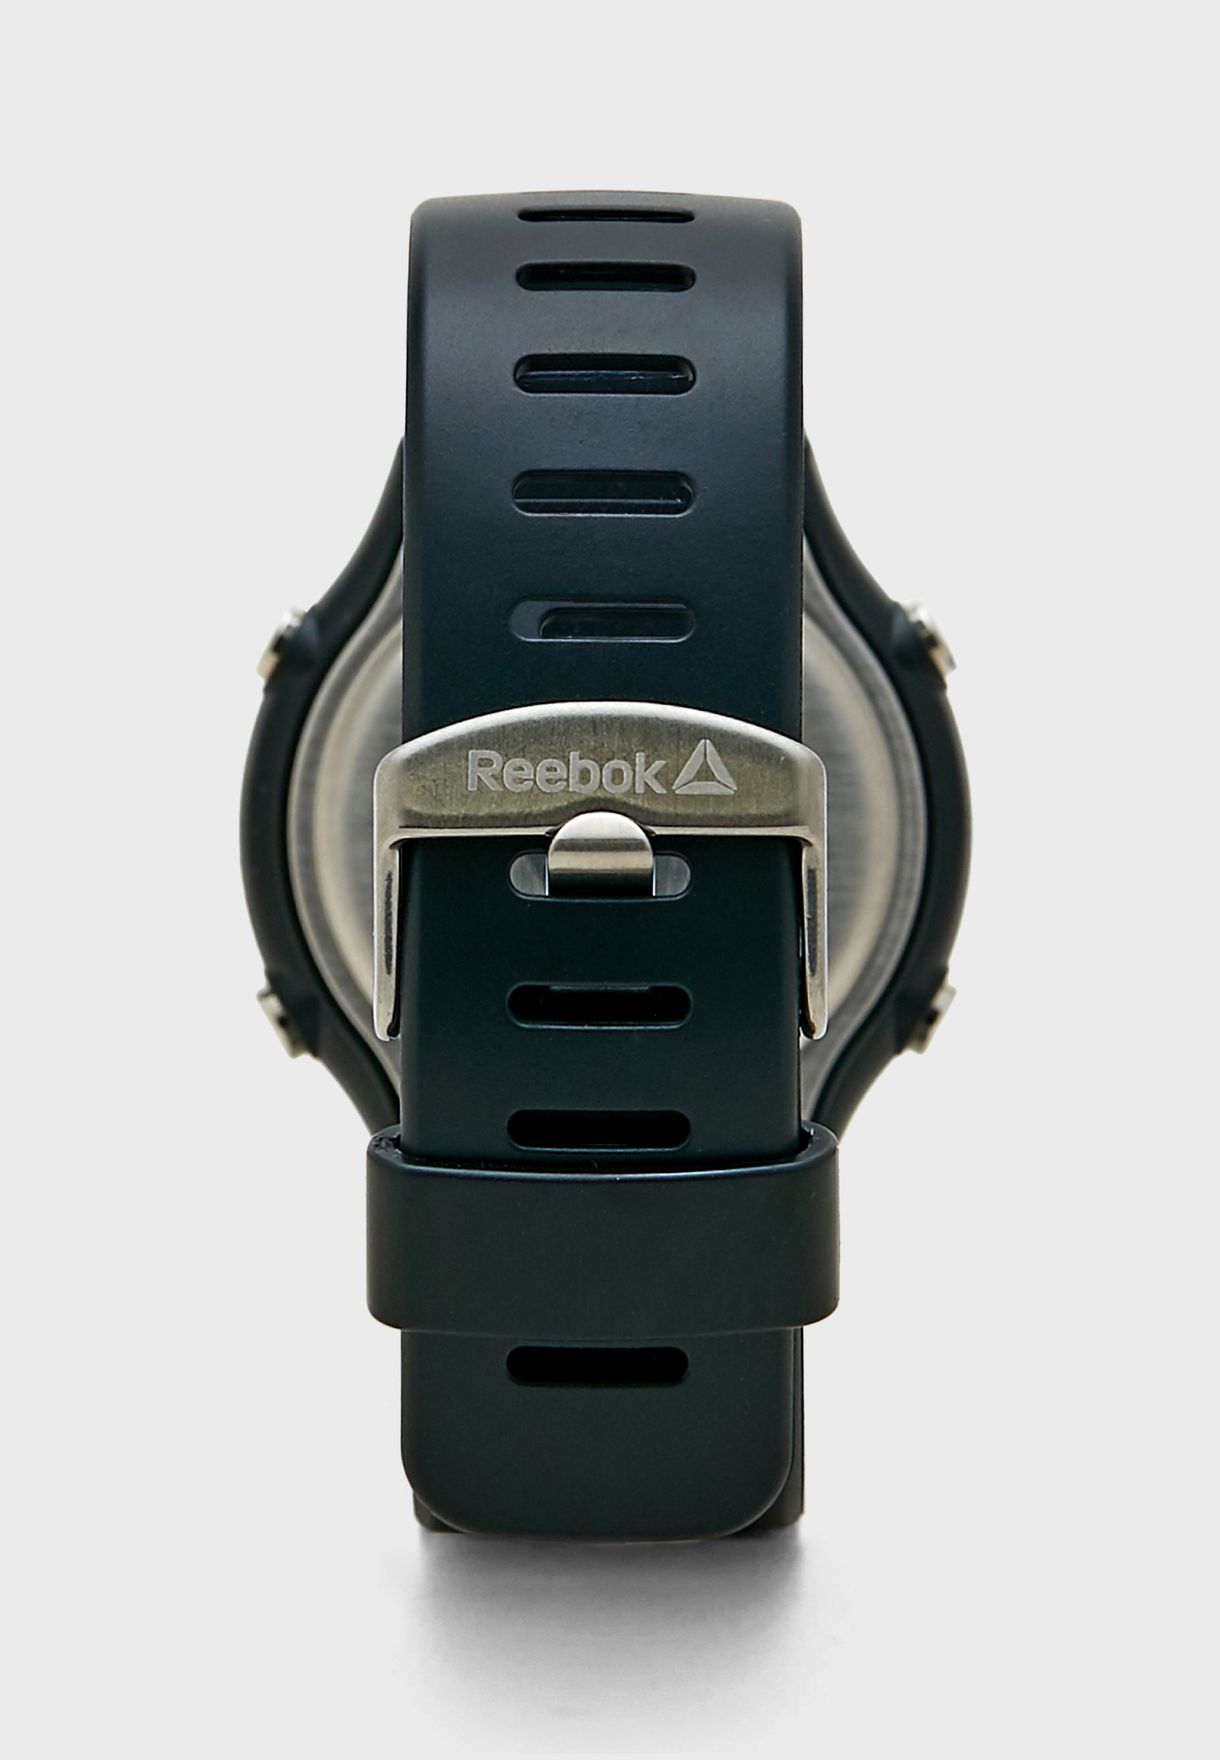 reebok men's leather strap watch